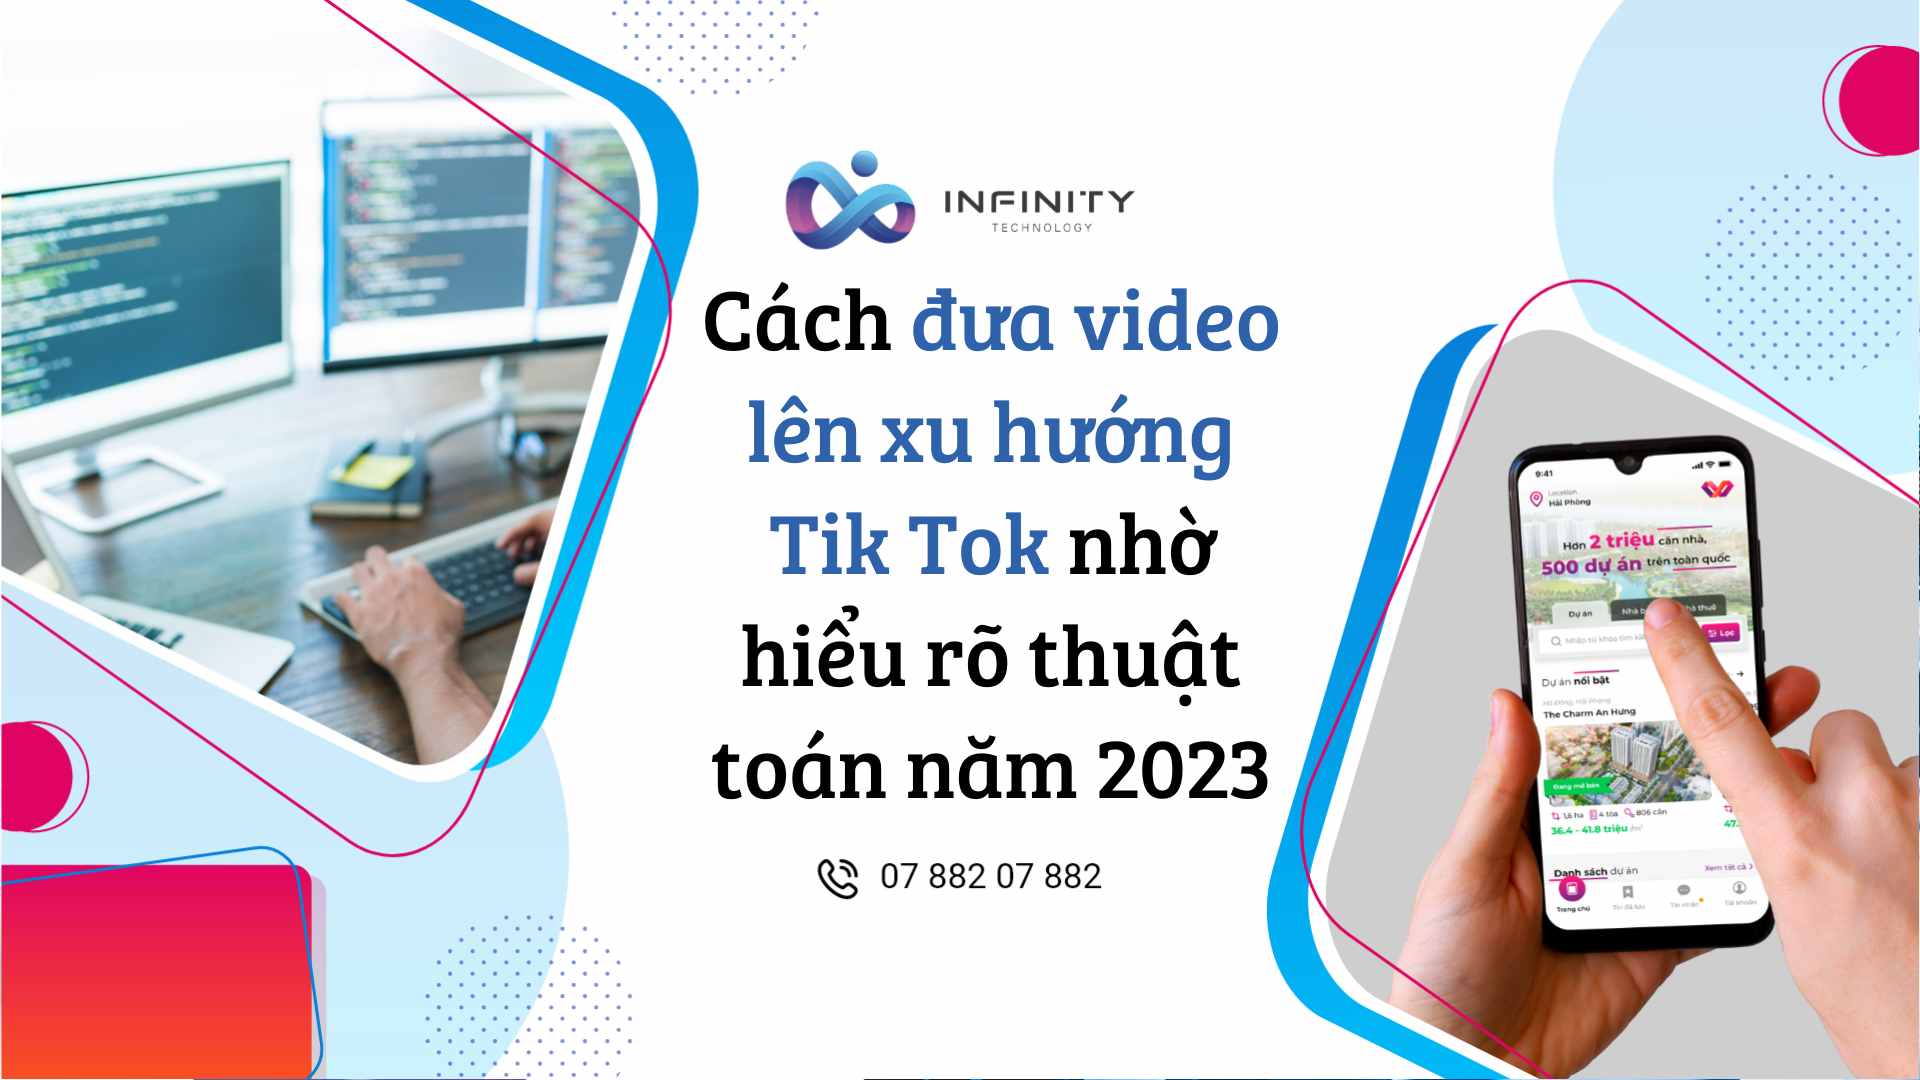 Cách đưa video lên xu hướng Tik Tok nhờ hiểu rõ thuật toán năm 2023